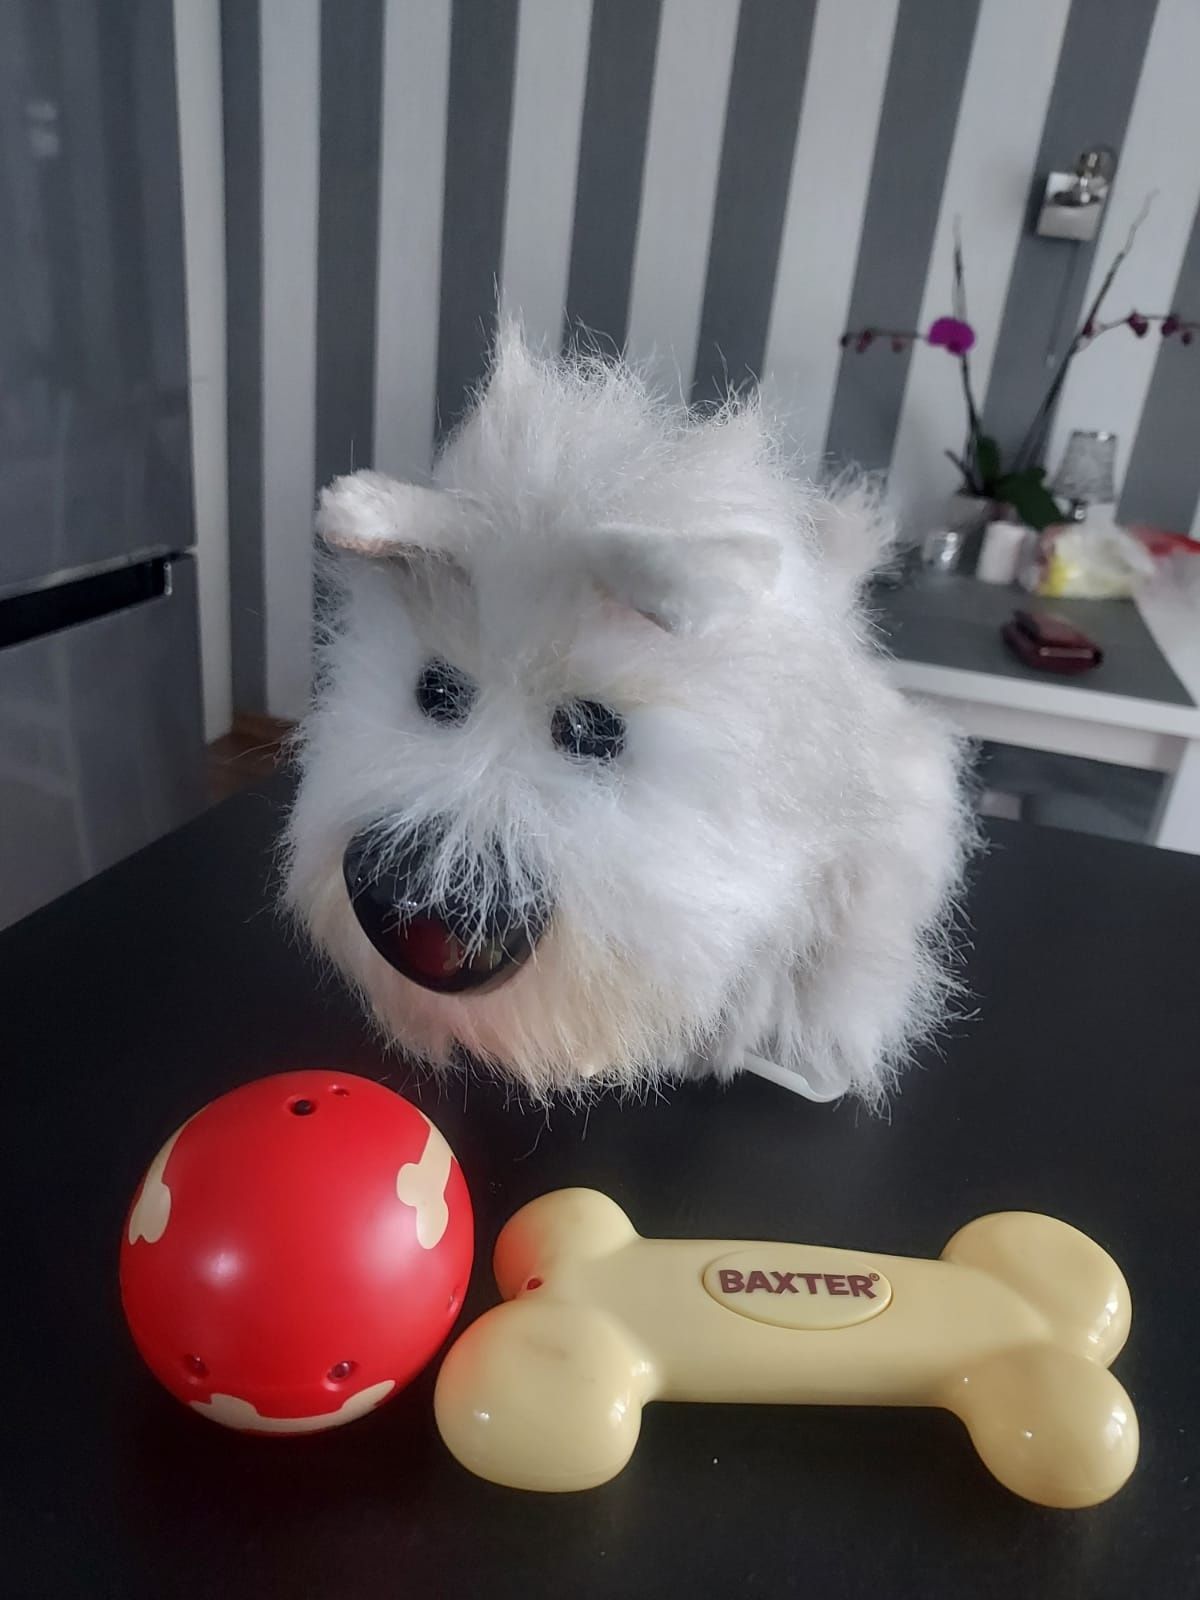 Baxter zabawka interaktywna